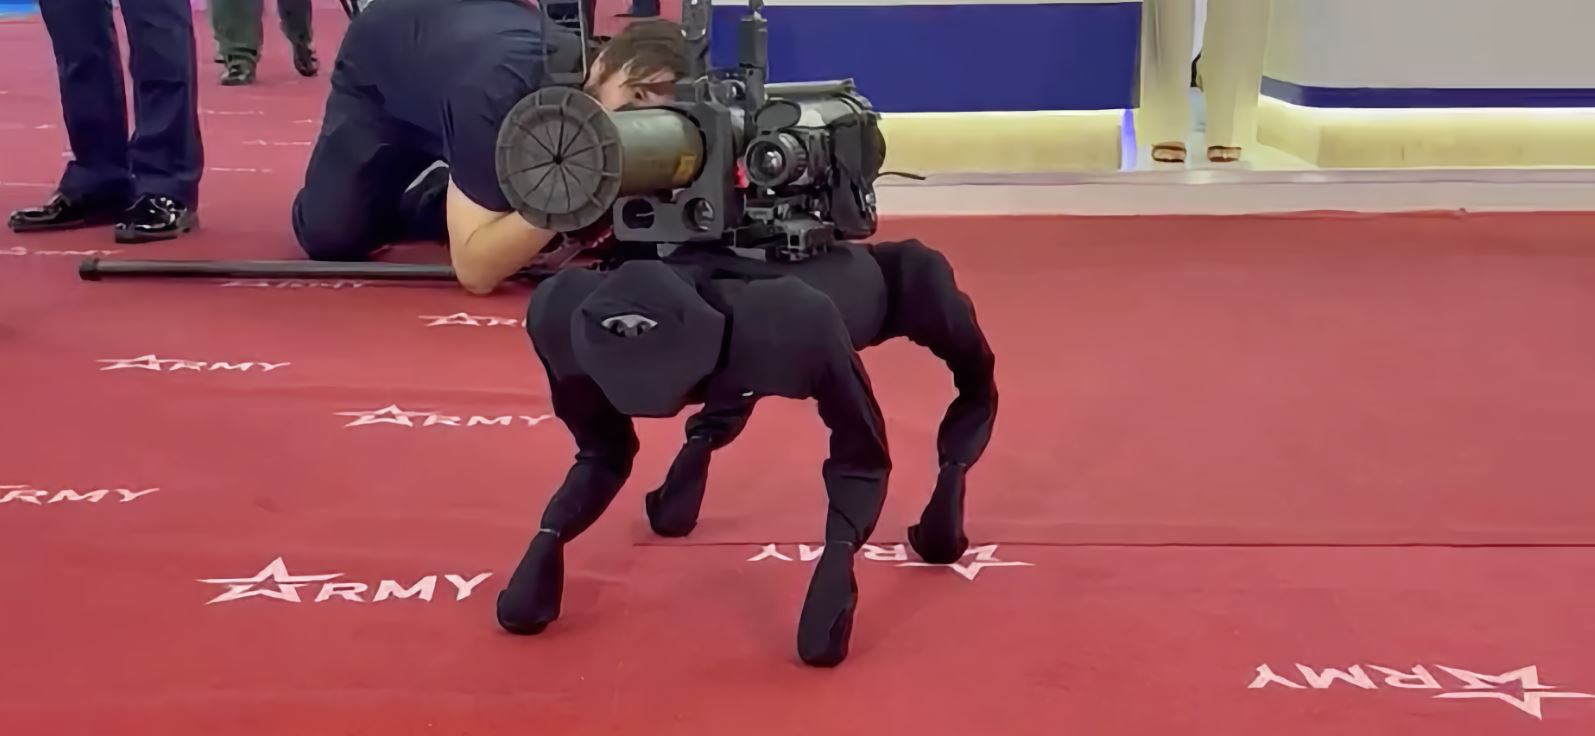 Робота-собаку с гранатометом показали на форуме «Армия-2022»